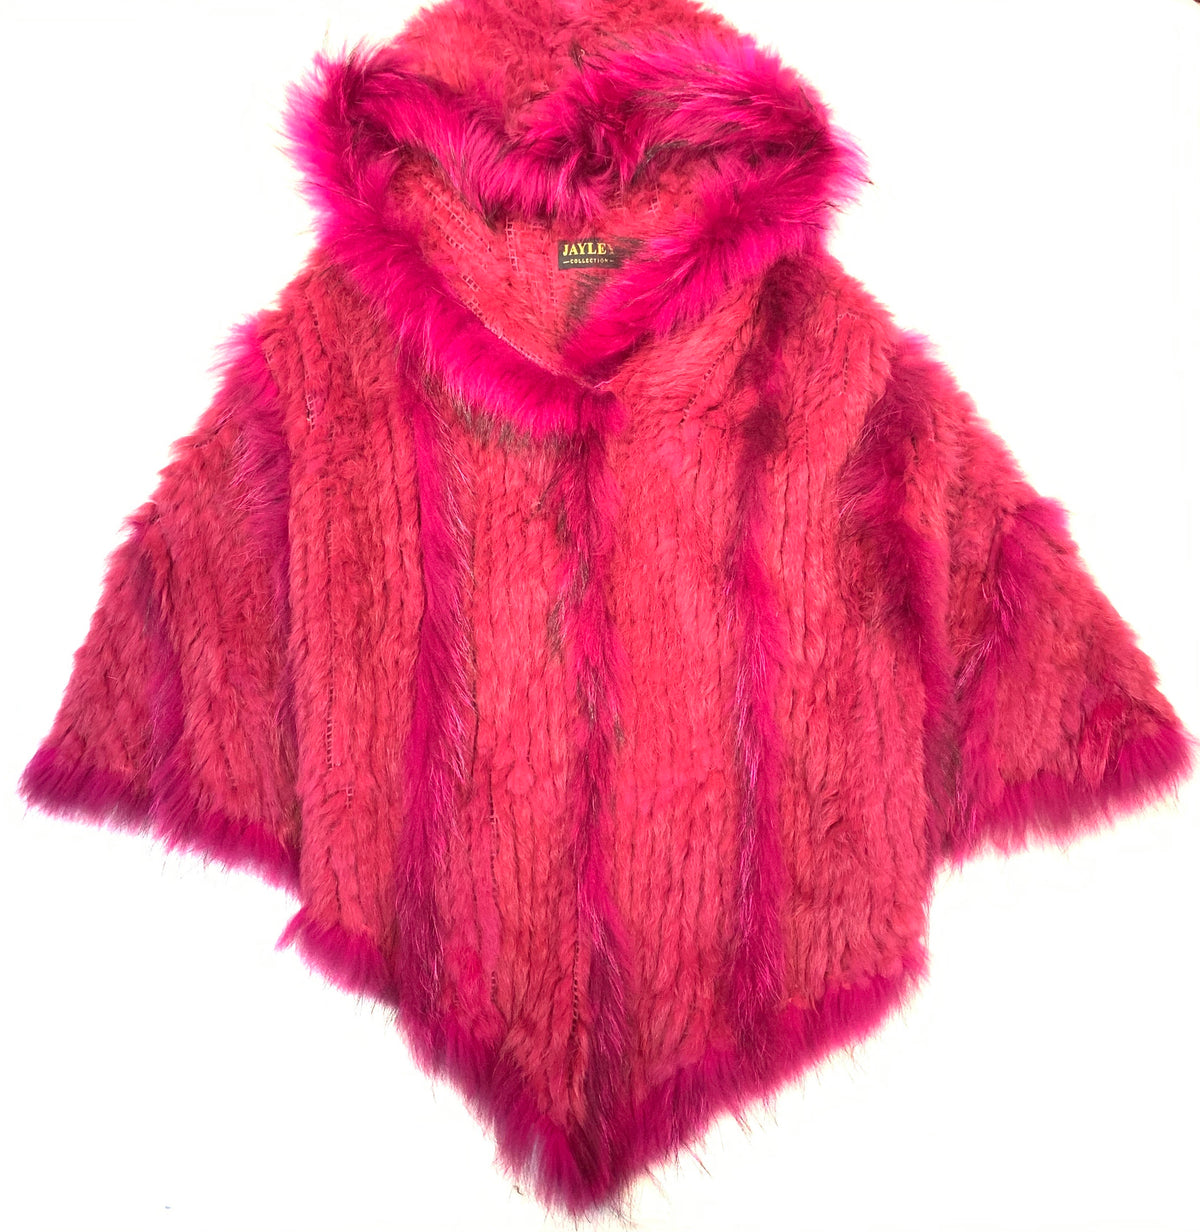 JAYLEY Pink Faux Fur Coat